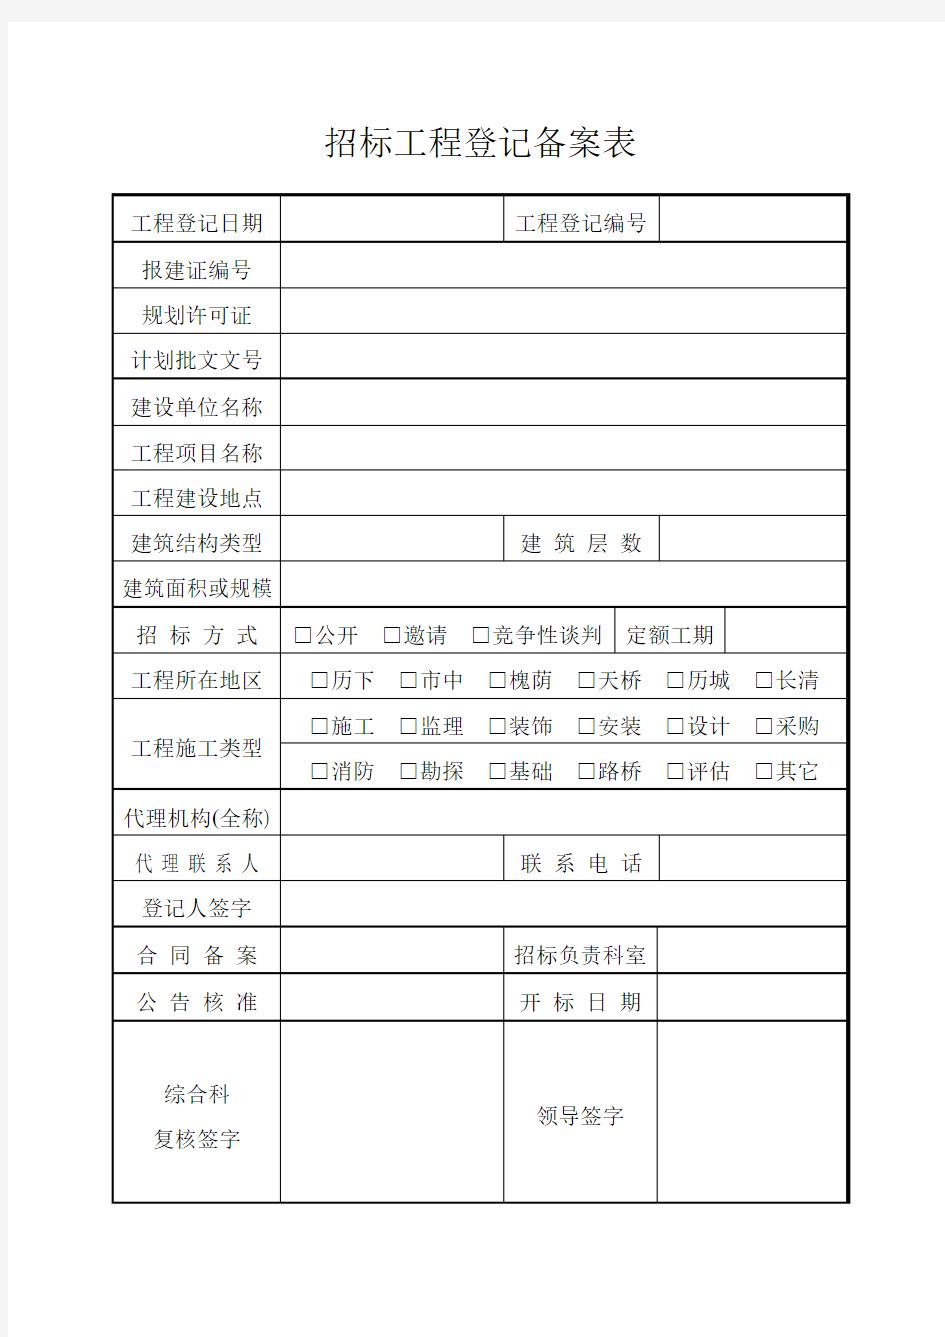 济南市招标项目流程表